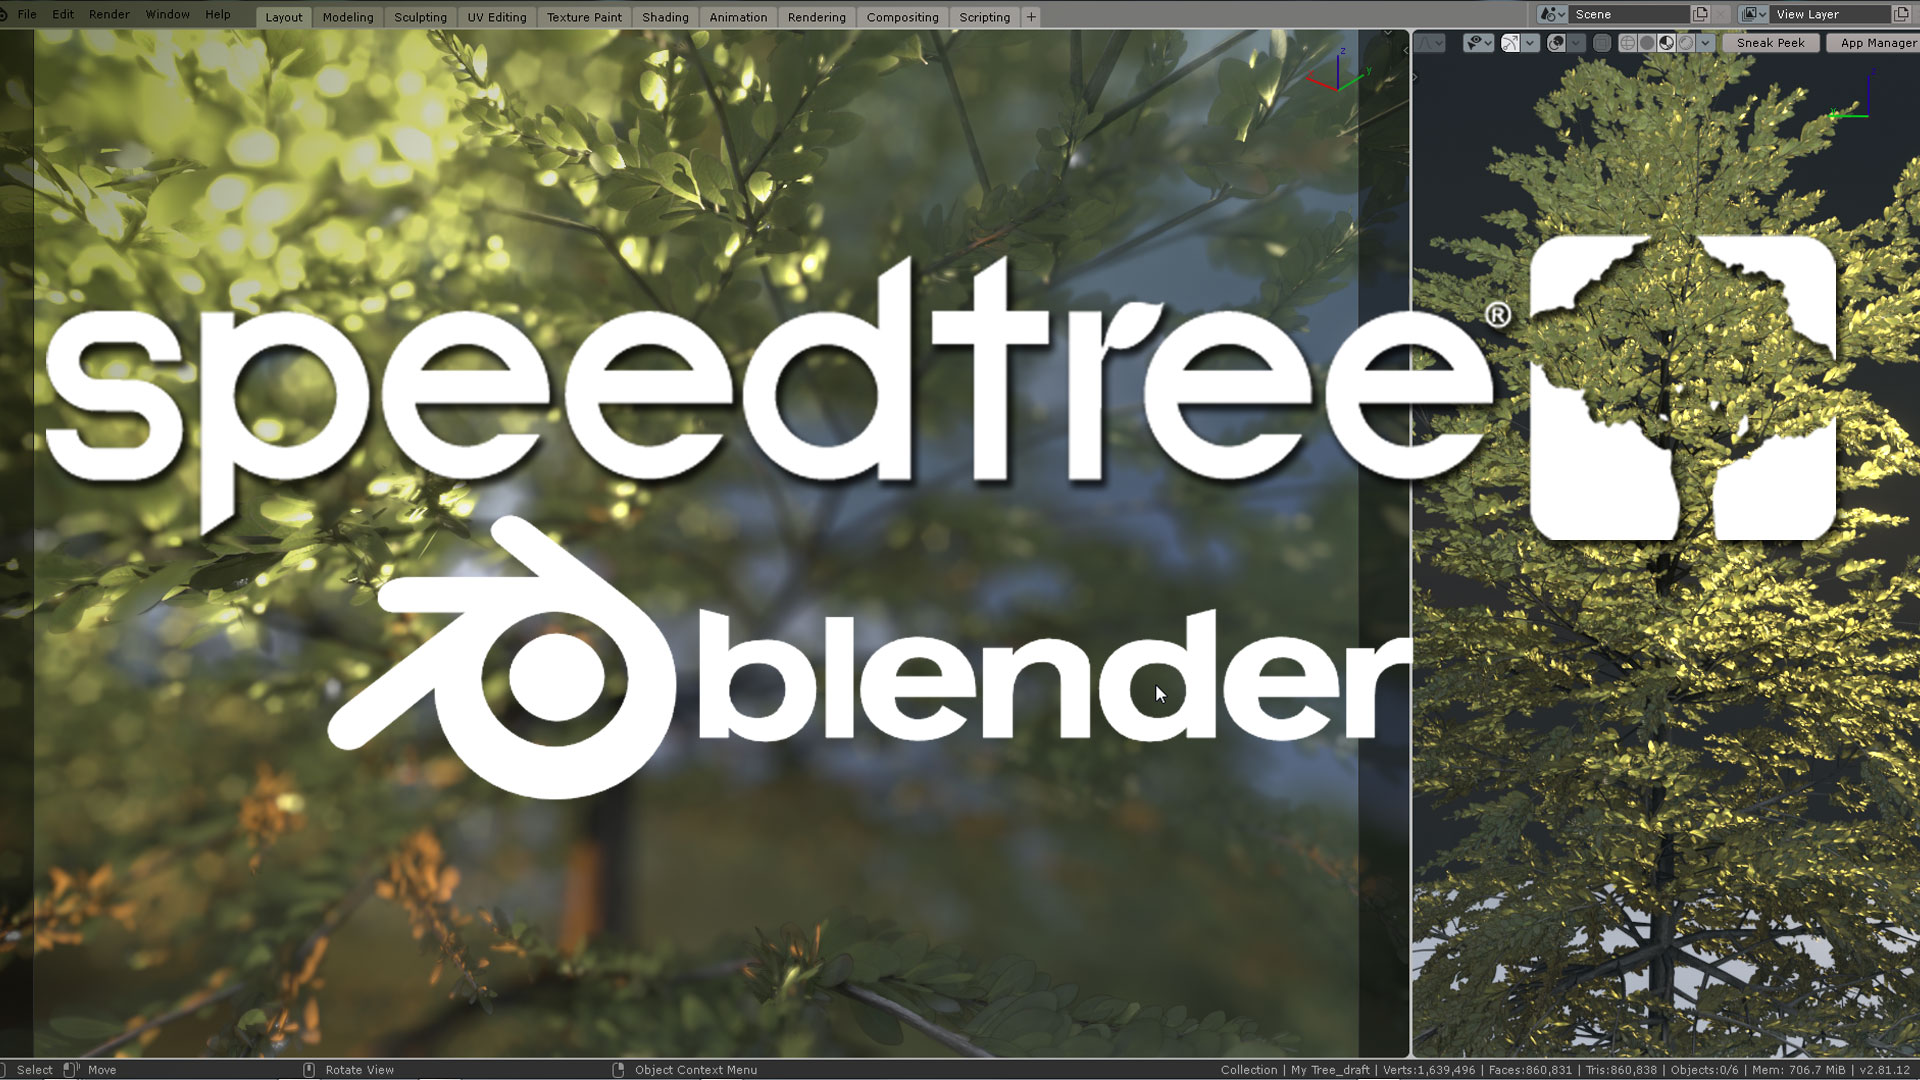 blender trees addon